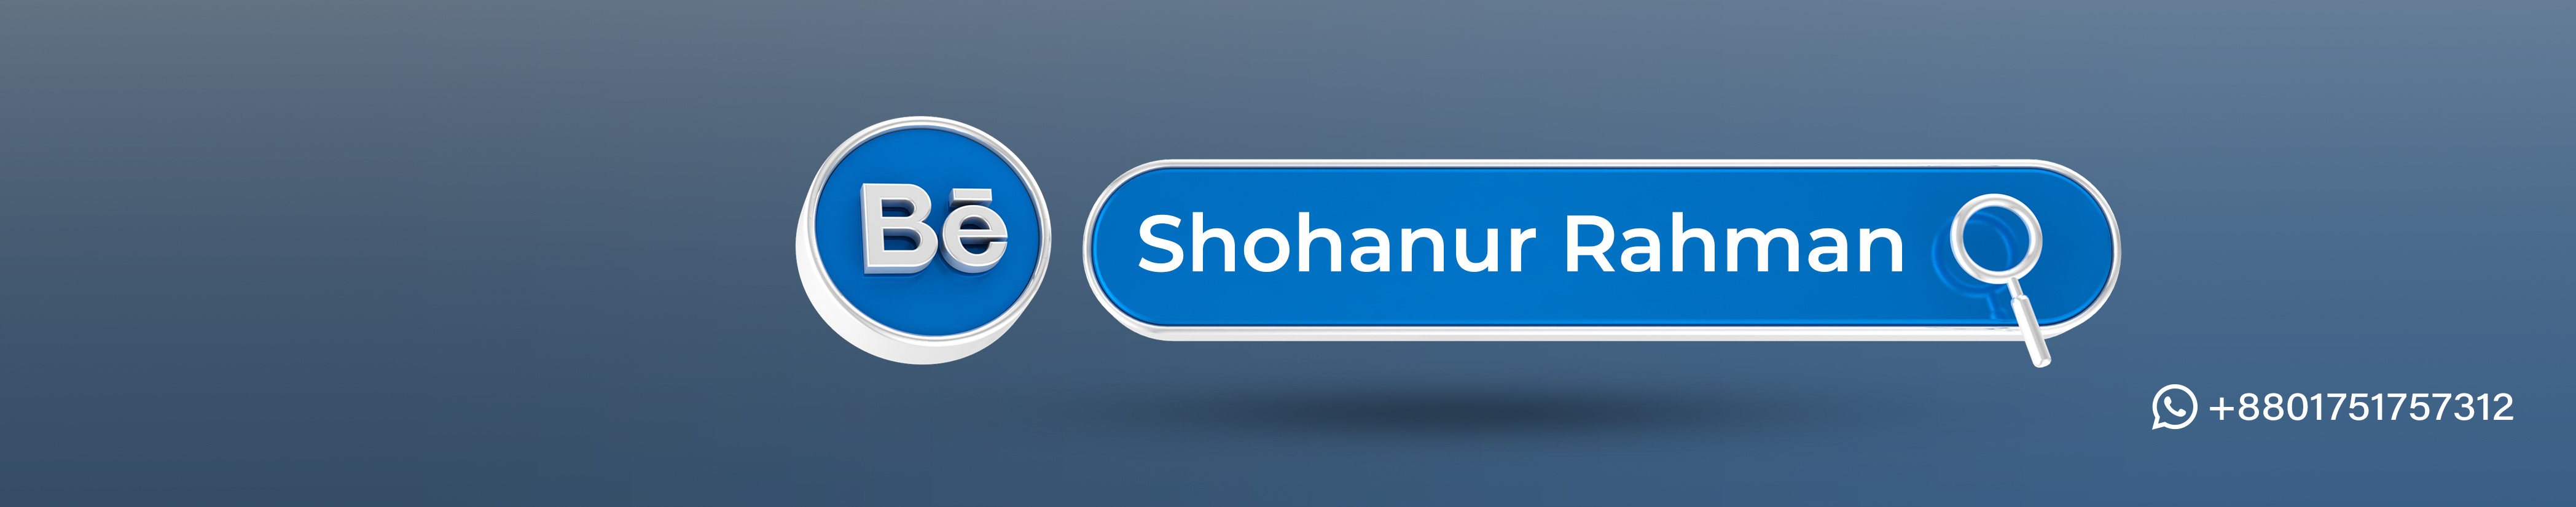 Shohanur Rahman's profile banner